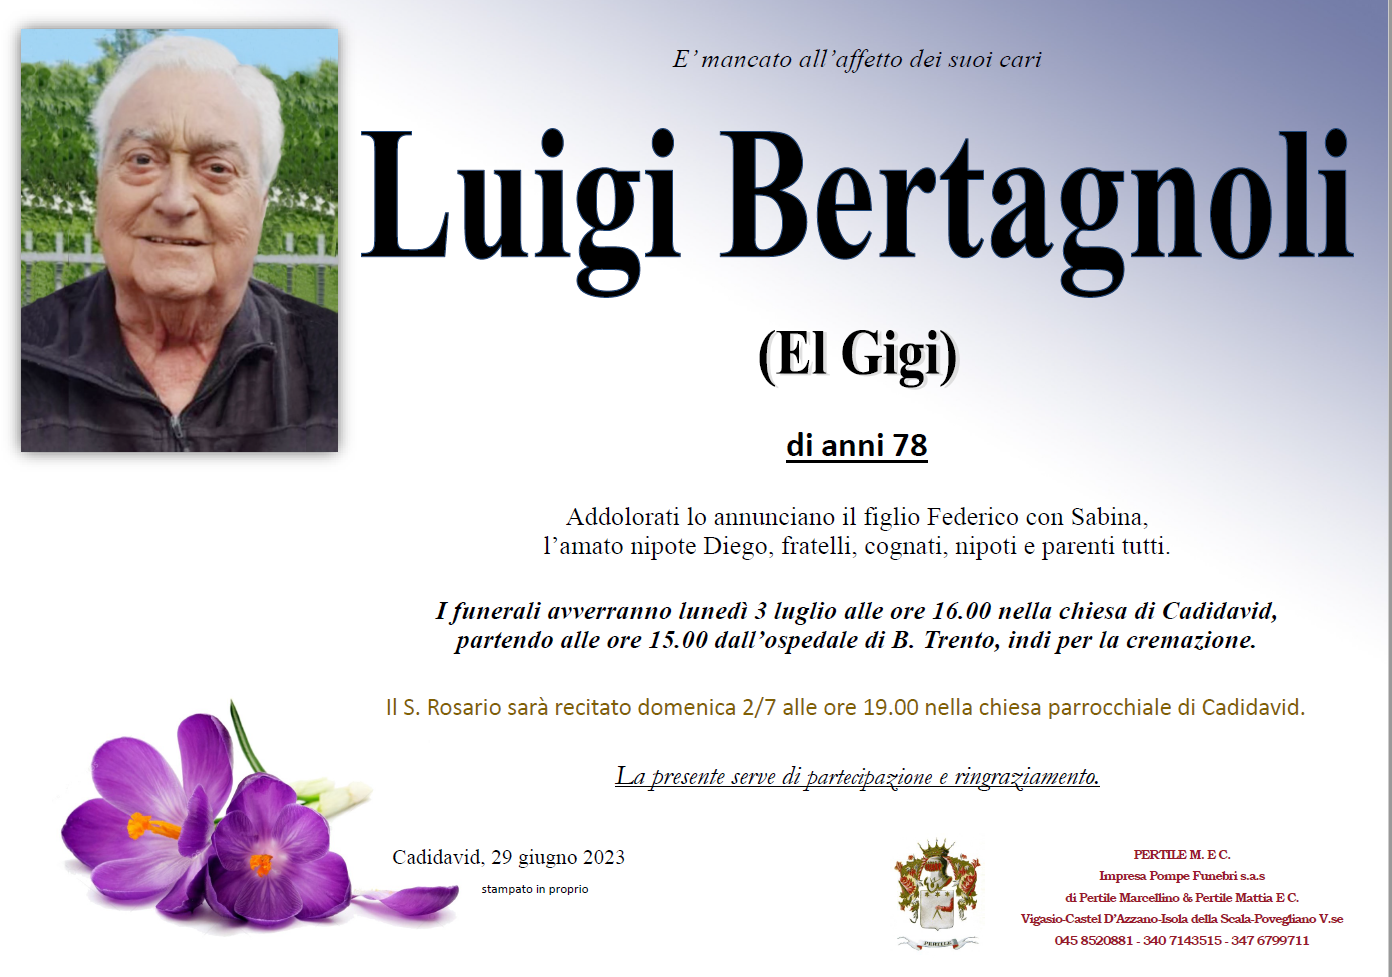 Bertagnoli Luigi (El Gigi)